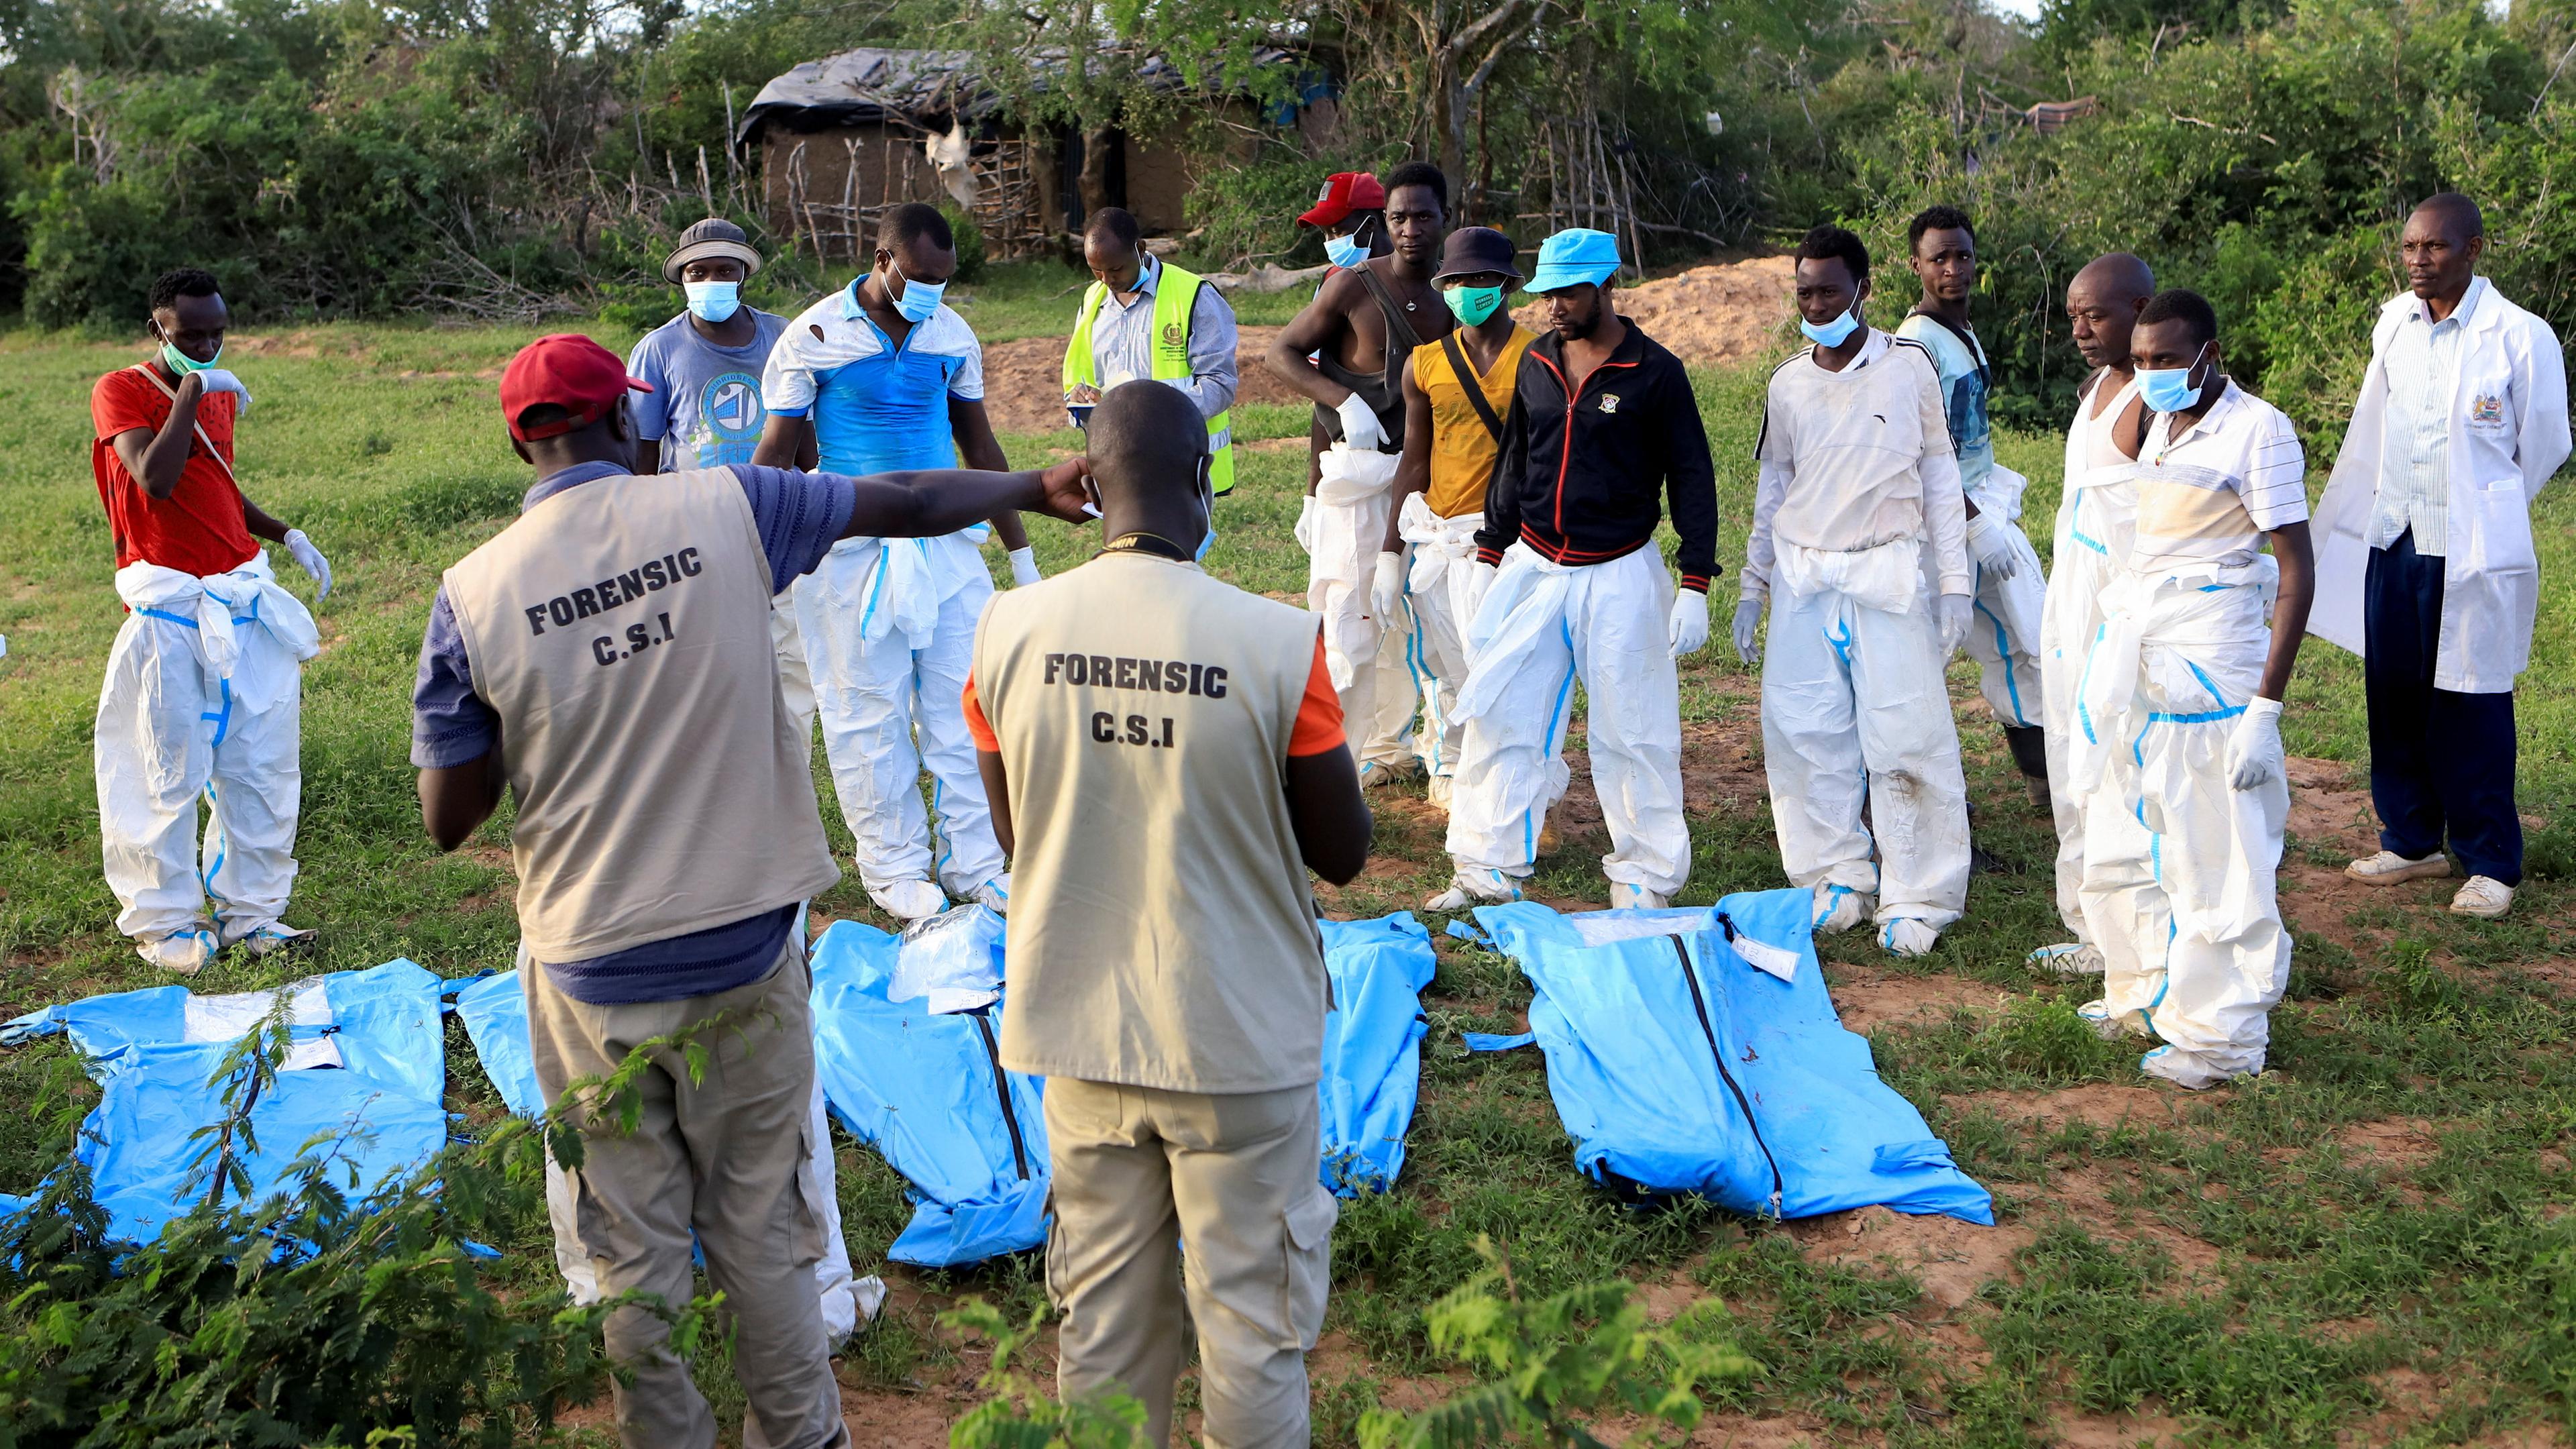 Massengräber in Kenia - Exhumierte Leichen